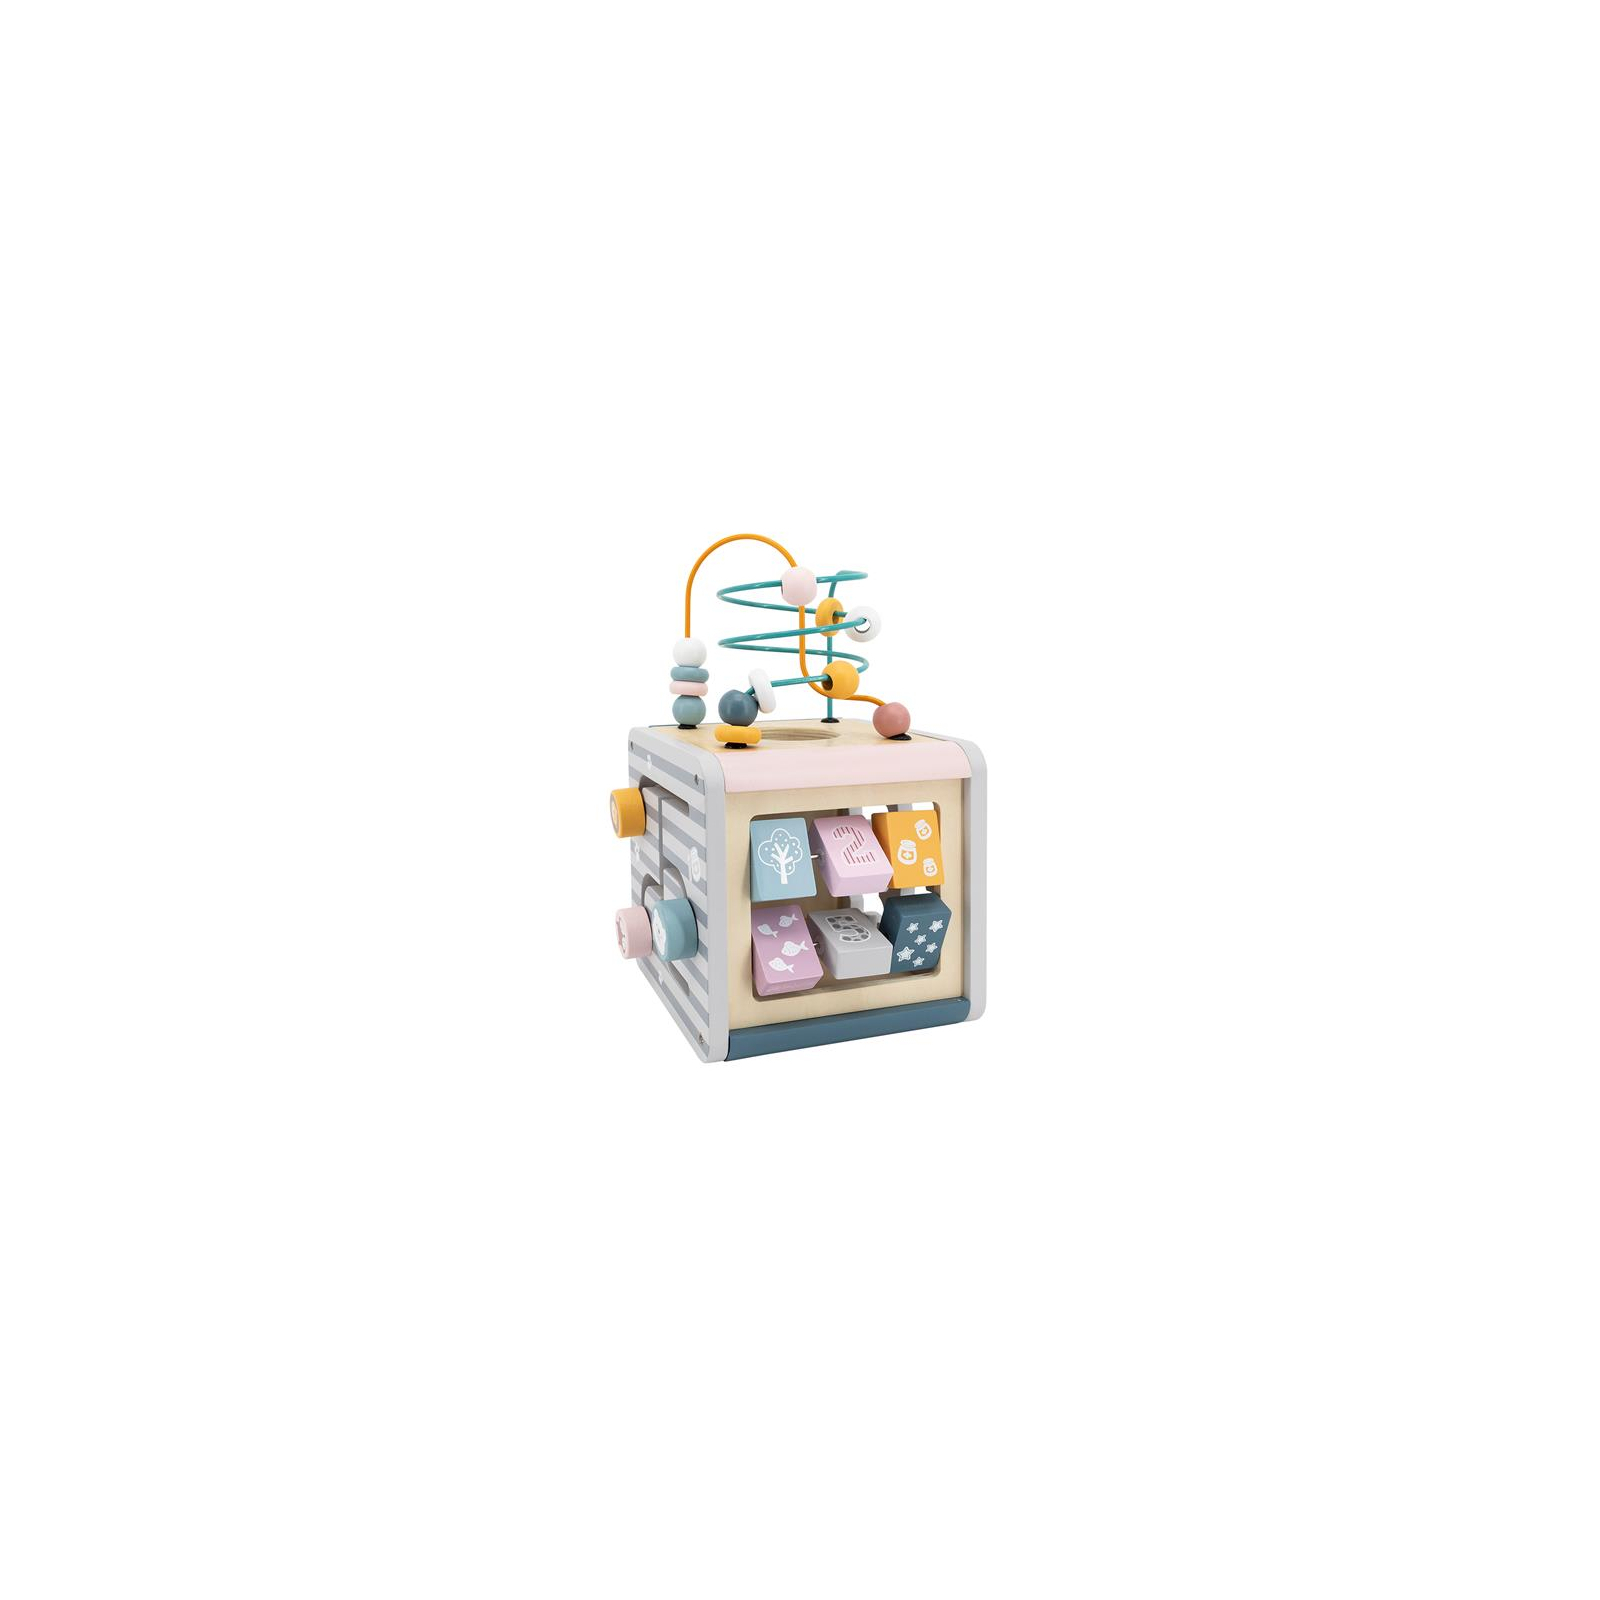 Развивающая игрушка Viga Toys Игровой центр PolarB Кубик 5-в-1 (44030) изображение 6